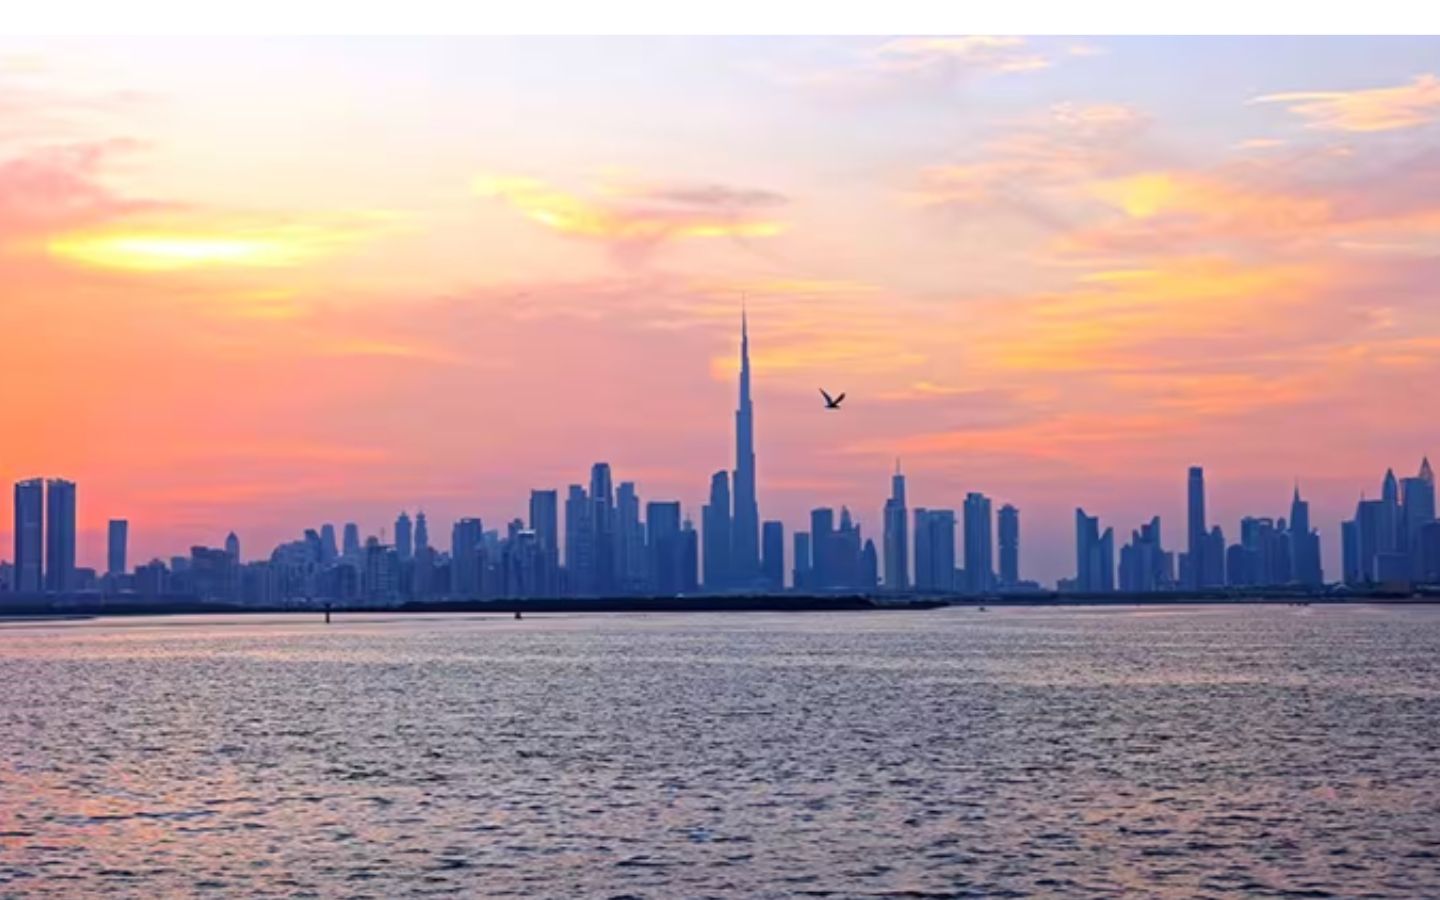 Panduan Lengkap Wisata ke Dubai Untuk Kamu dan Keluarga